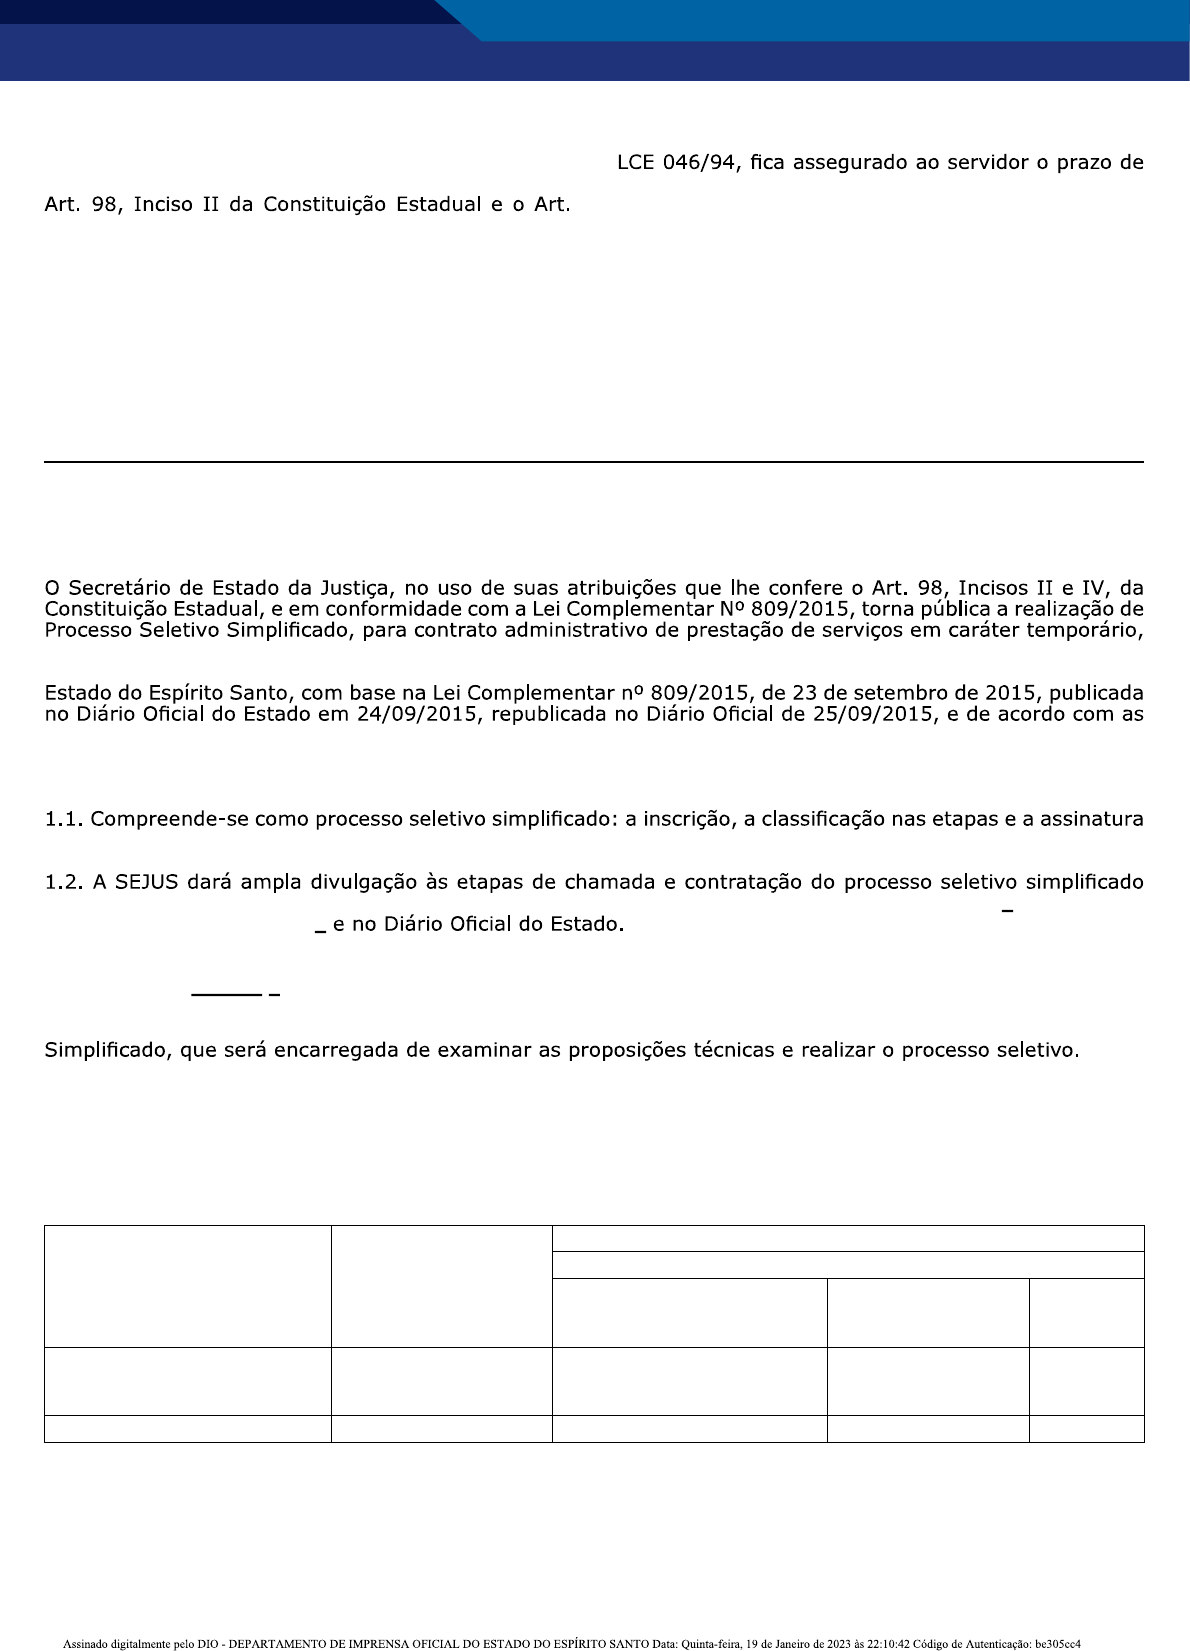 EDITAL DE CONVOCAÇÃO Nº 001/2023 – MANIFESTAÇÃO DE INTERESSE NA